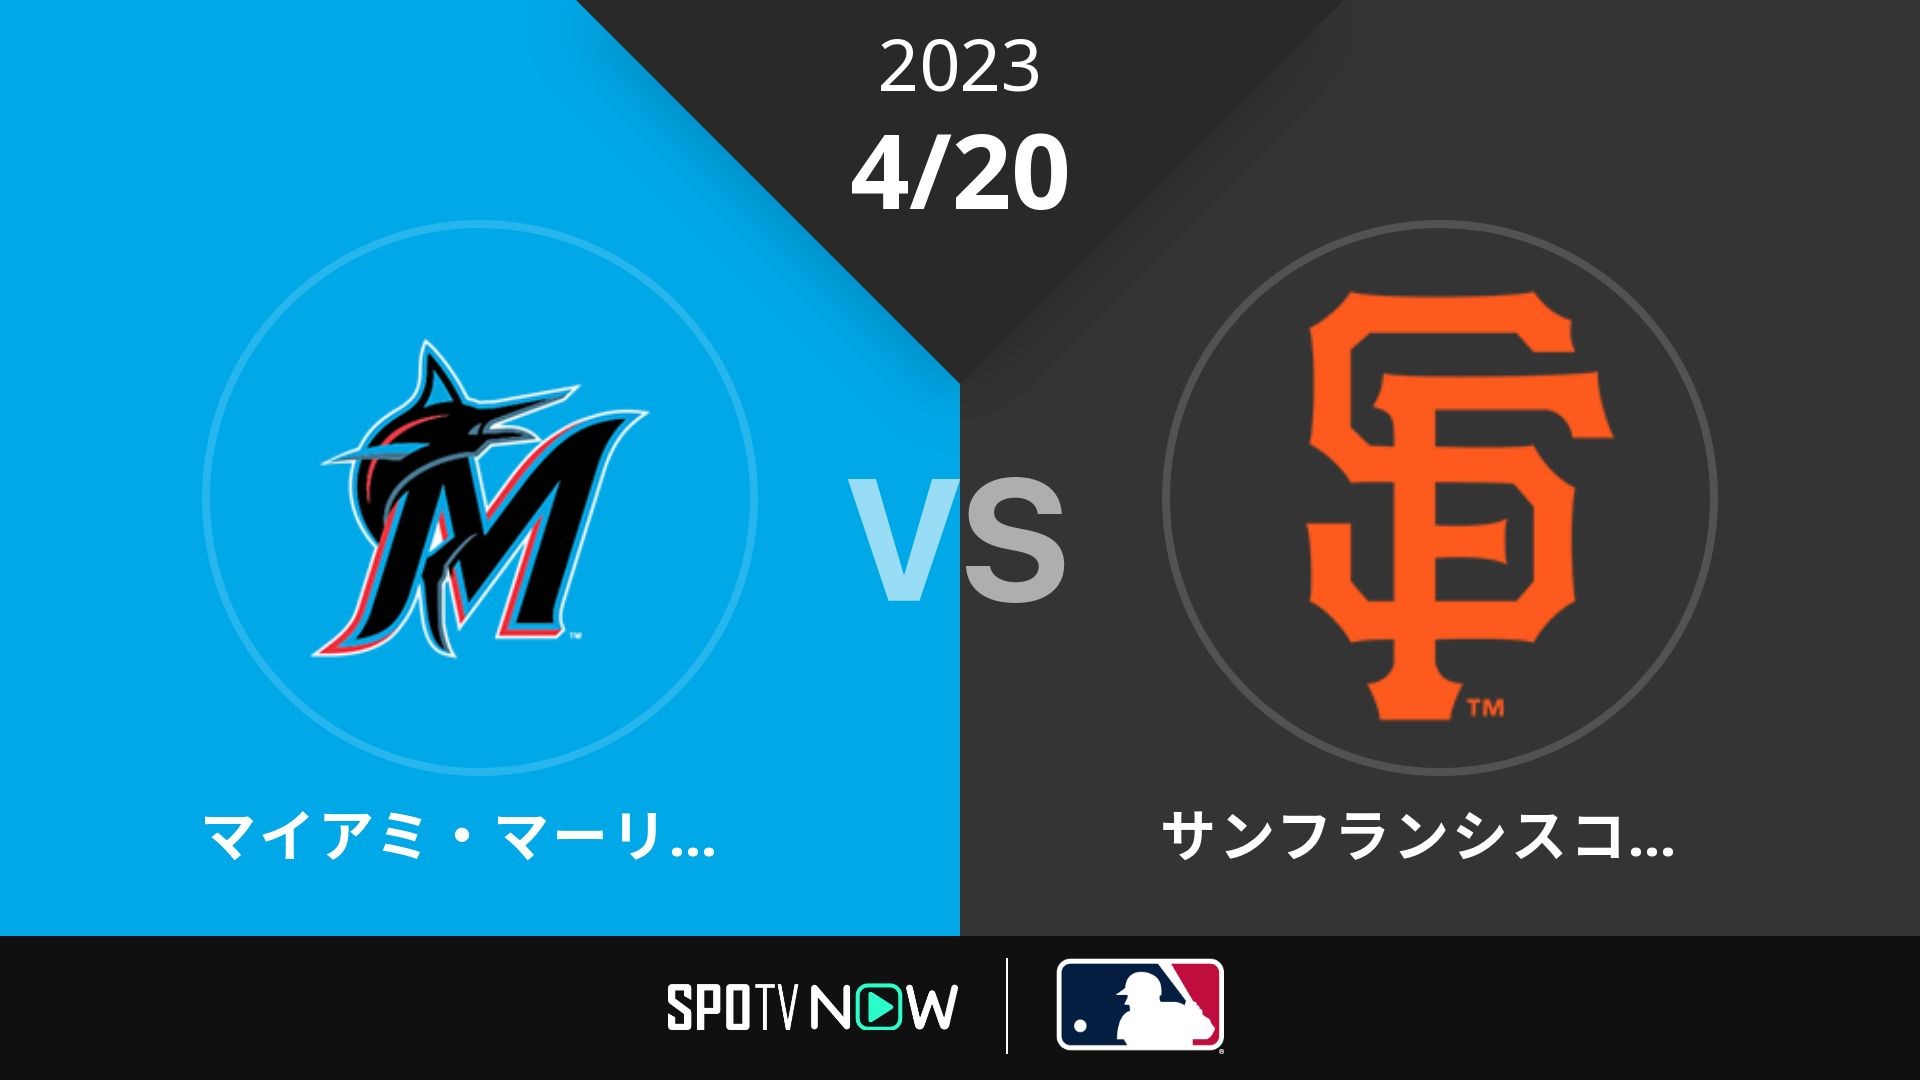 2023/4/20 マーリンズ vs ジャイアンツ [MLB]